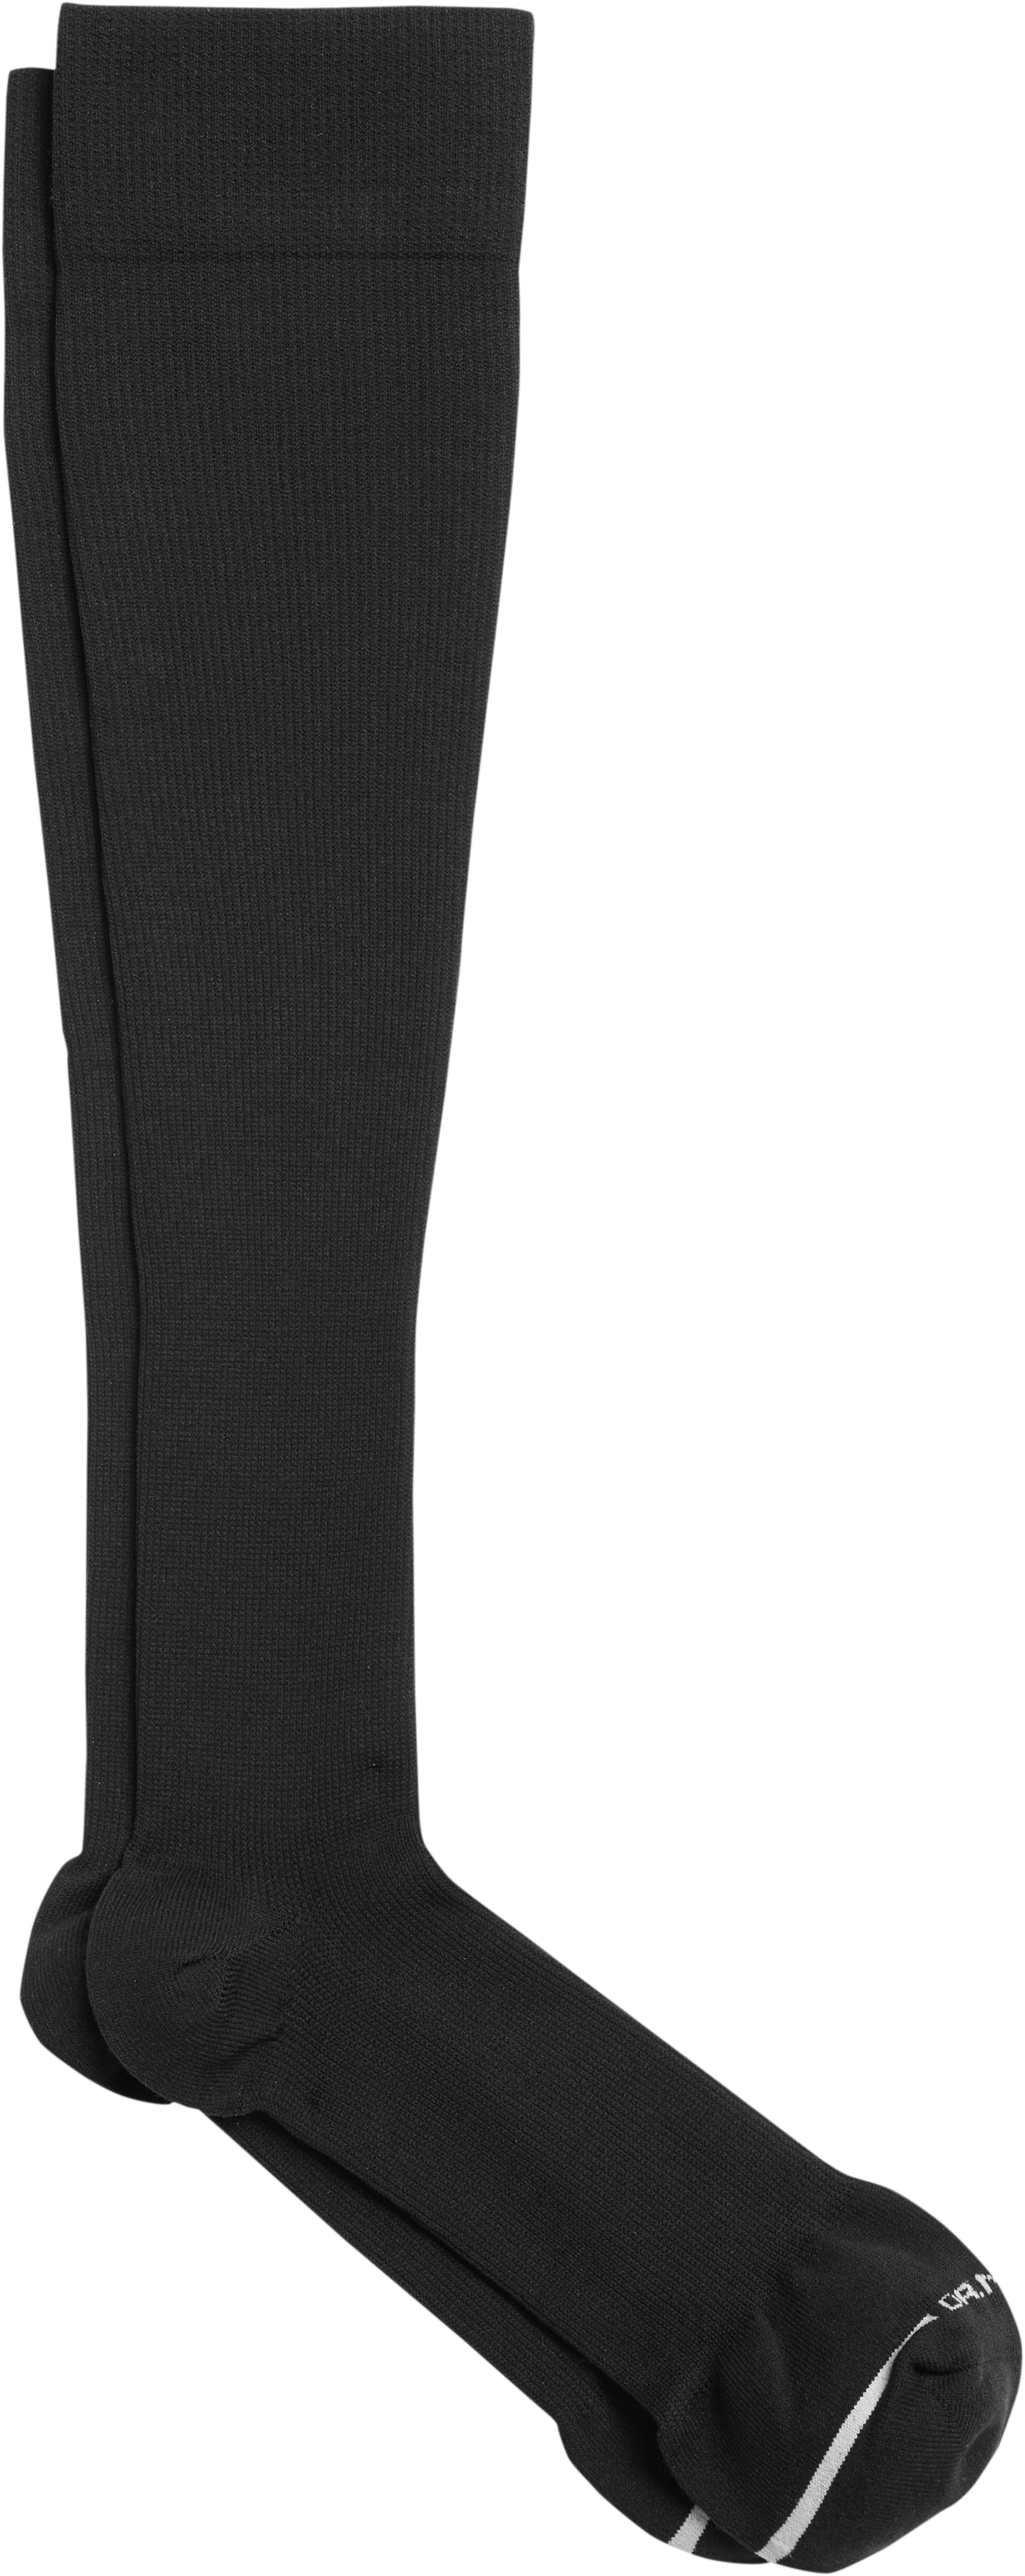 Dr. Motion Black Argyle Compression Socks, 1 Pair - Men's Accessories ...